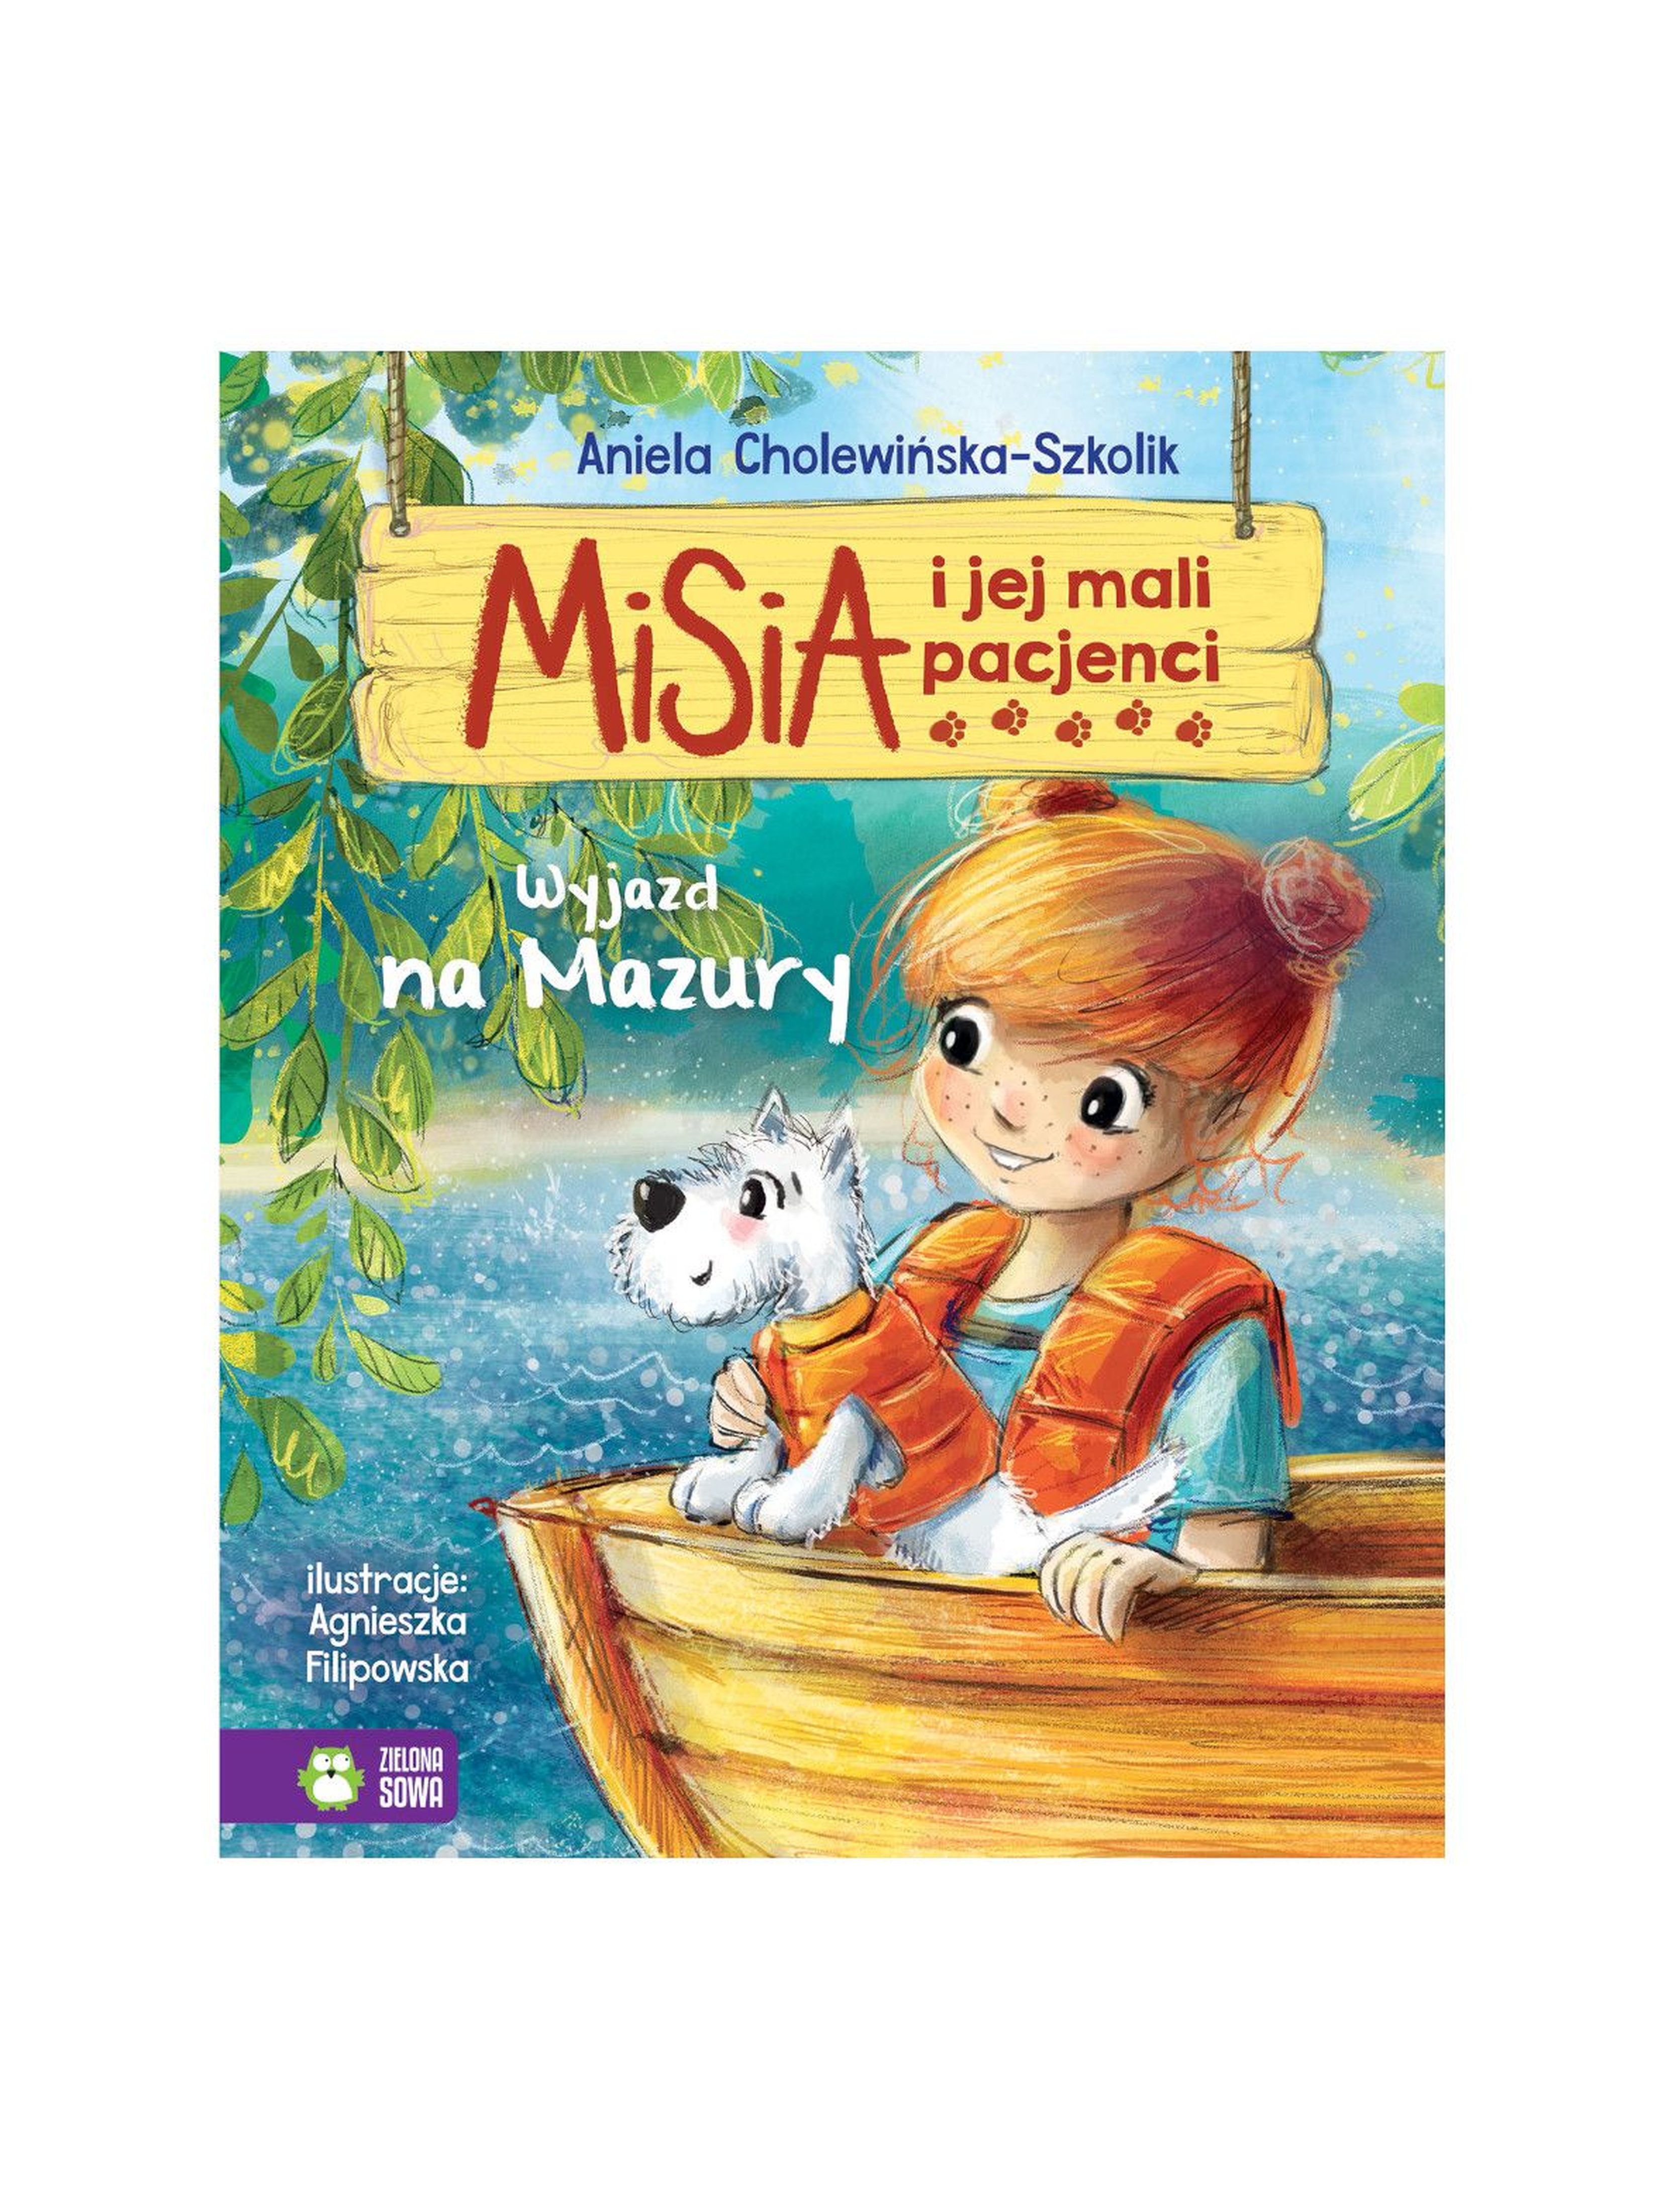 Książka dla dzieci- Wyjazd na Mazury. Misia i jej mali pacjenci wiek 4+